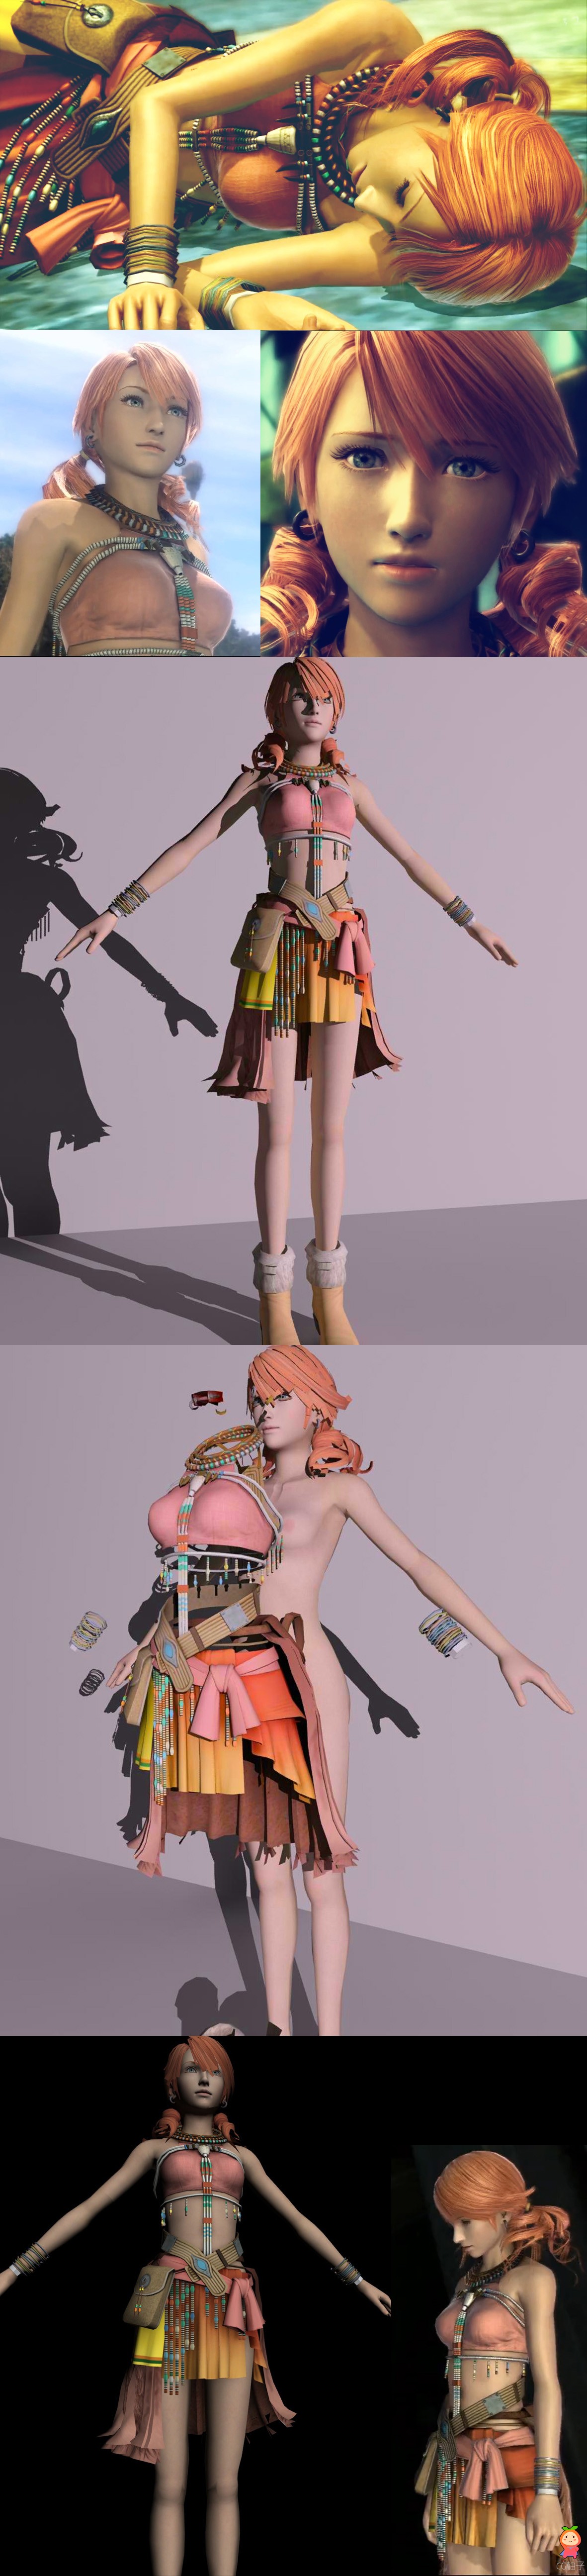 《最终幻想F13》香草3D模型，游戏角色漂亮女孩3D角色模型